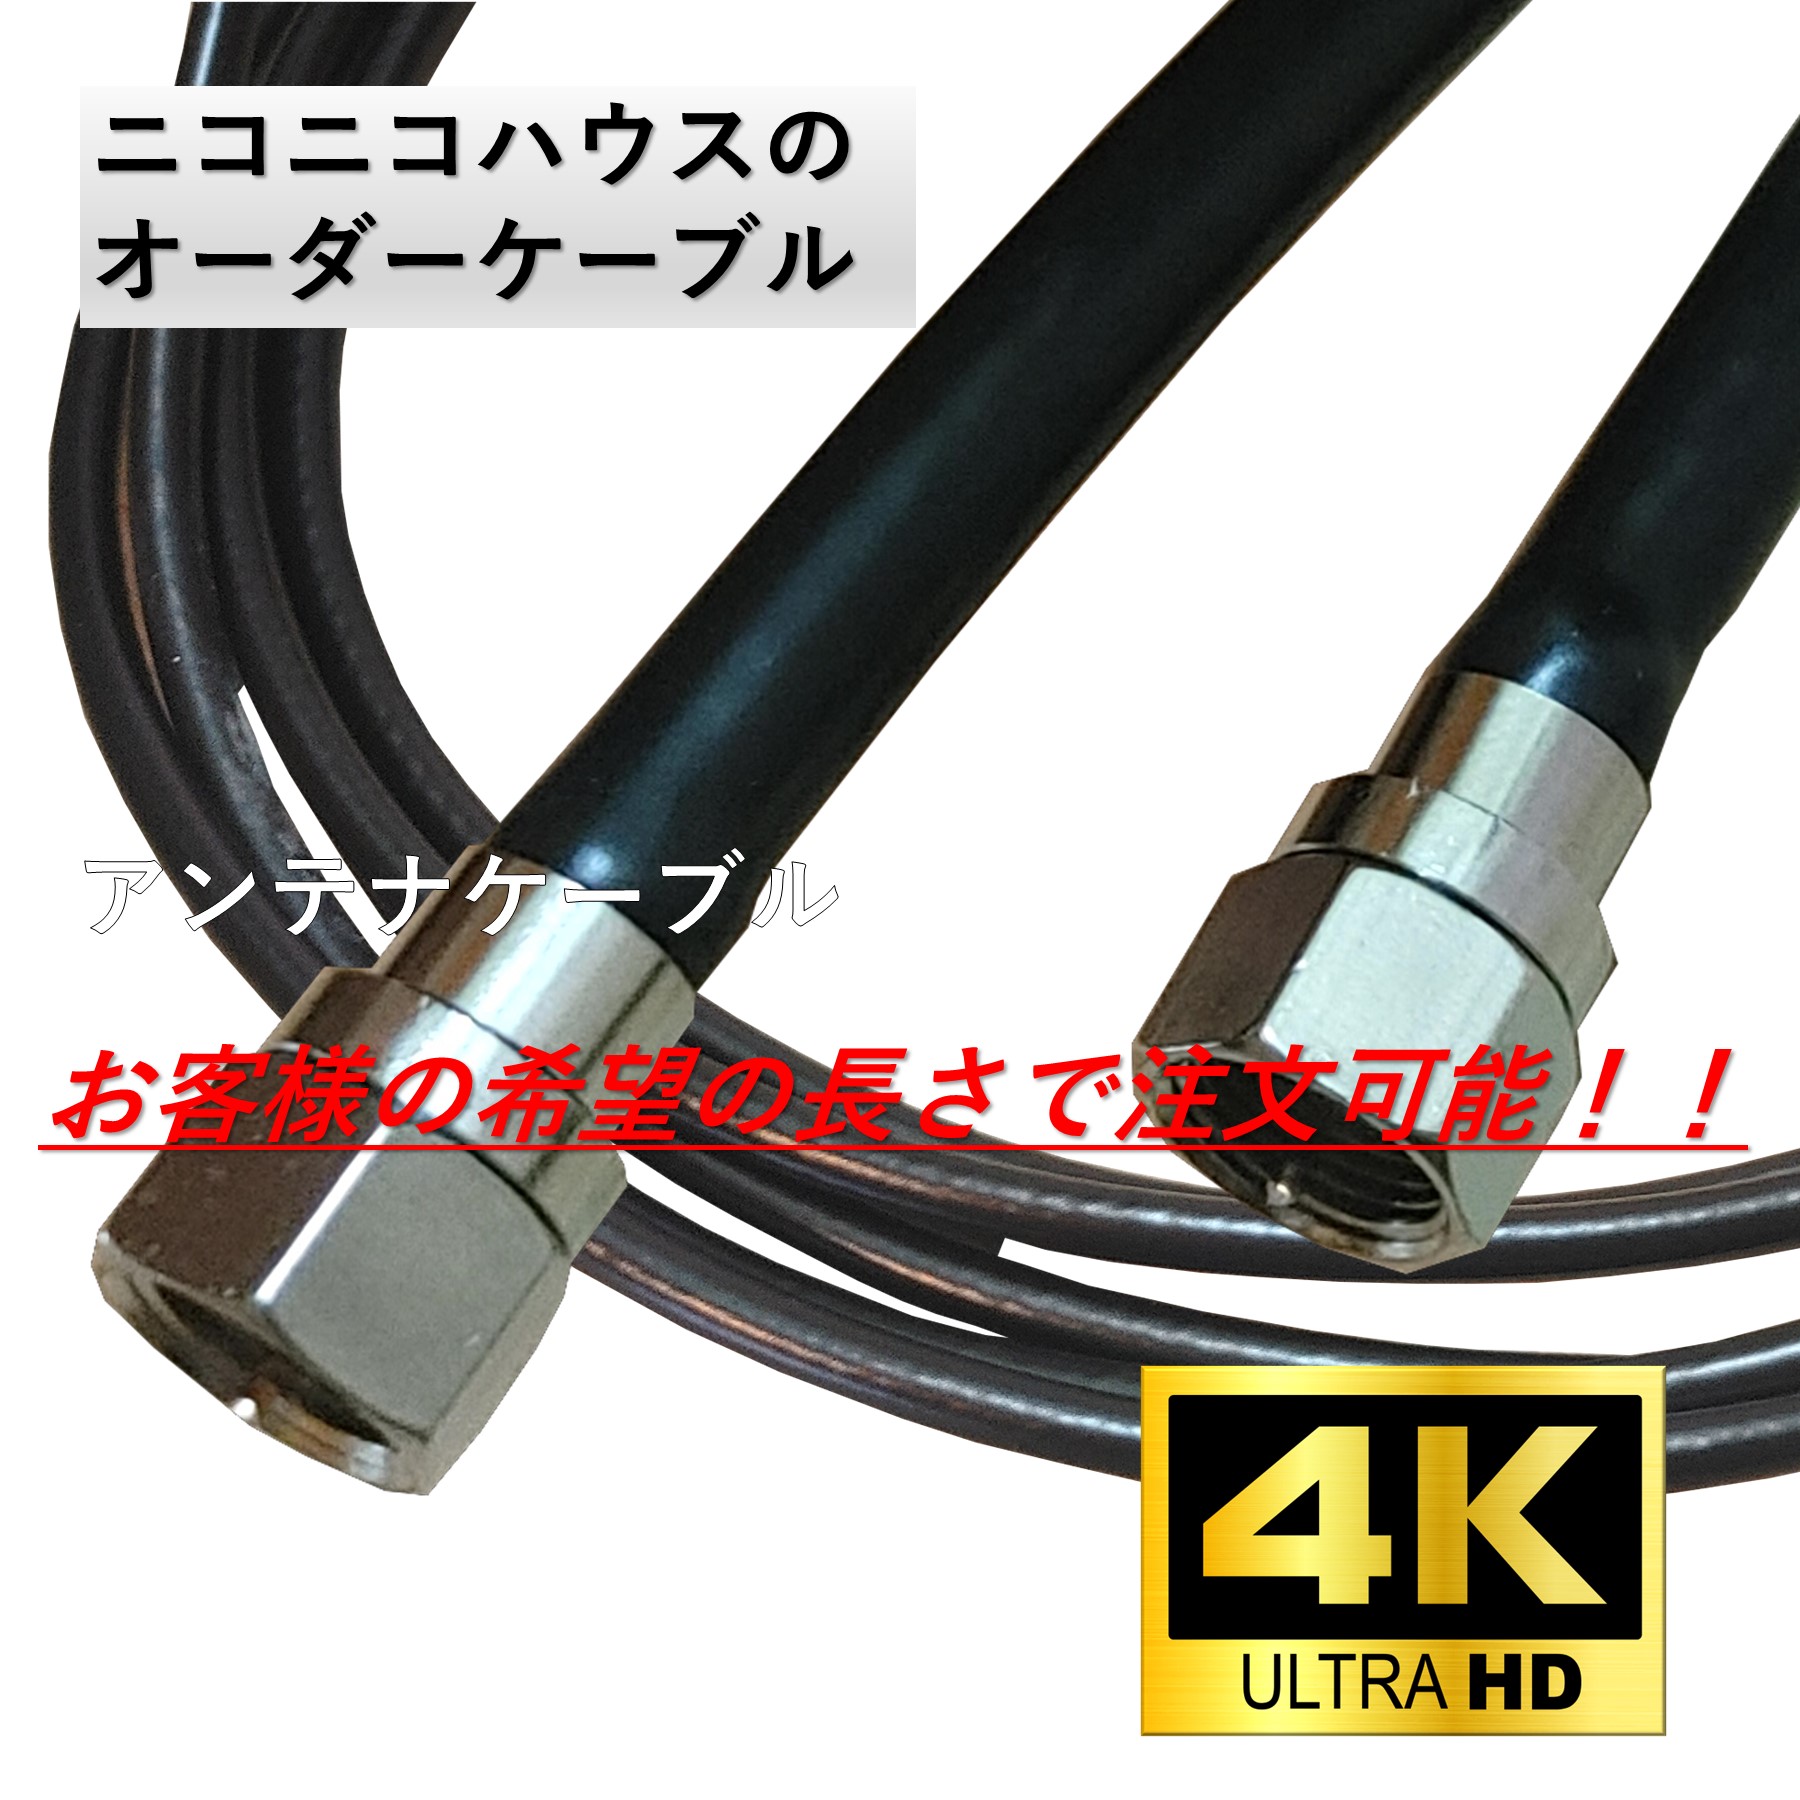  антенна кабель 10cm из 15cm 2K 4K 8K наземный BS CS цифровое вещание соответствует коаксильный кабель обе край F type разъем телевизор 